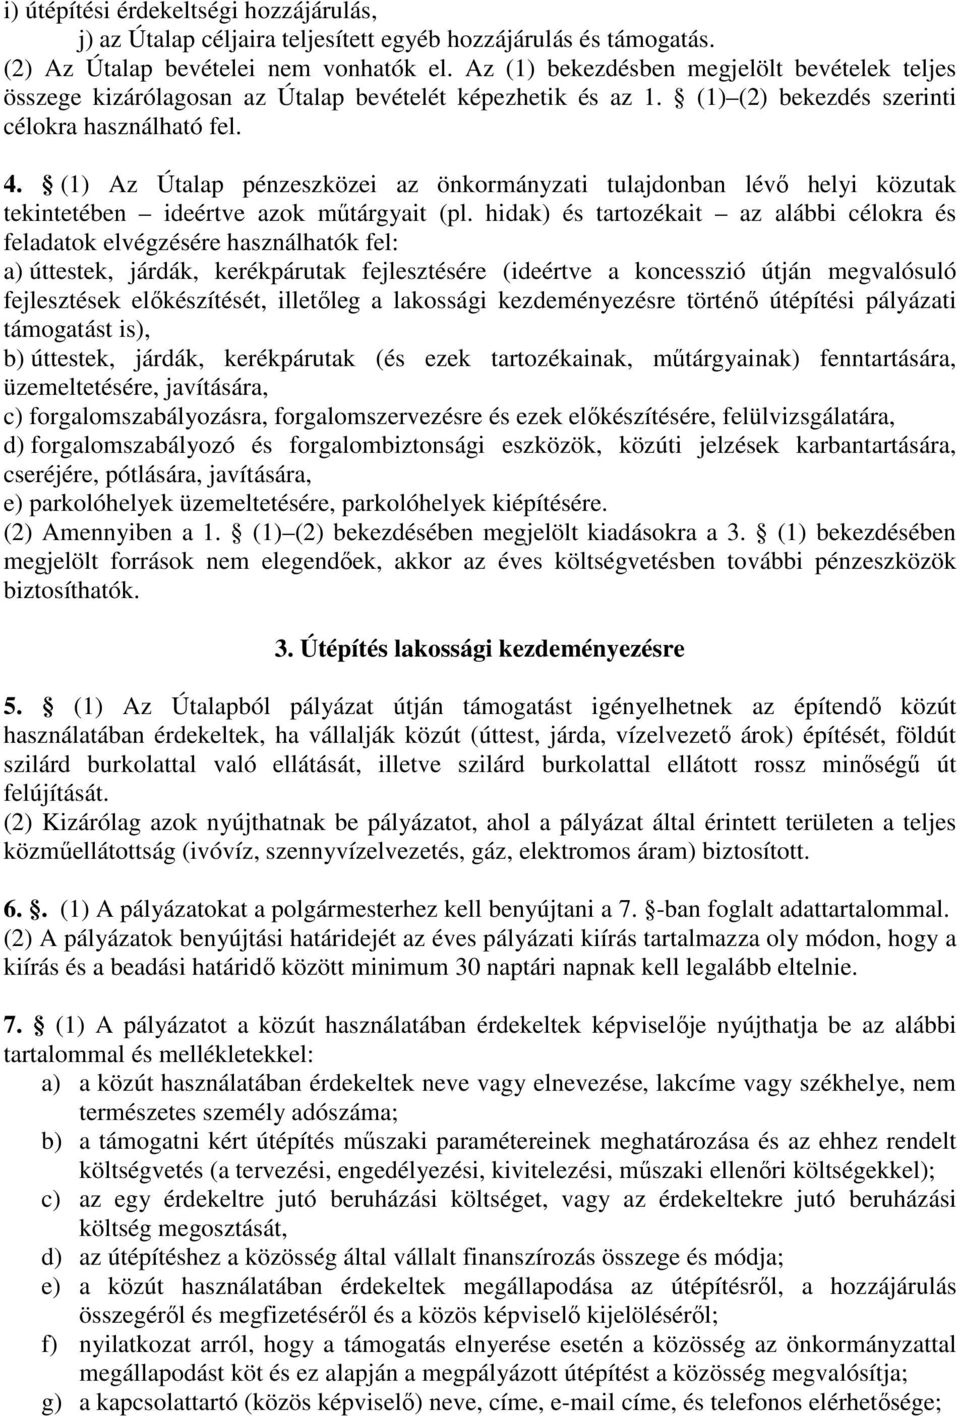 (1) Az Útalap pénzeszközei az önkormányzati tulajdonban lévı helyi közutak tekintetében ideértve azok mőtárgyait (pl.